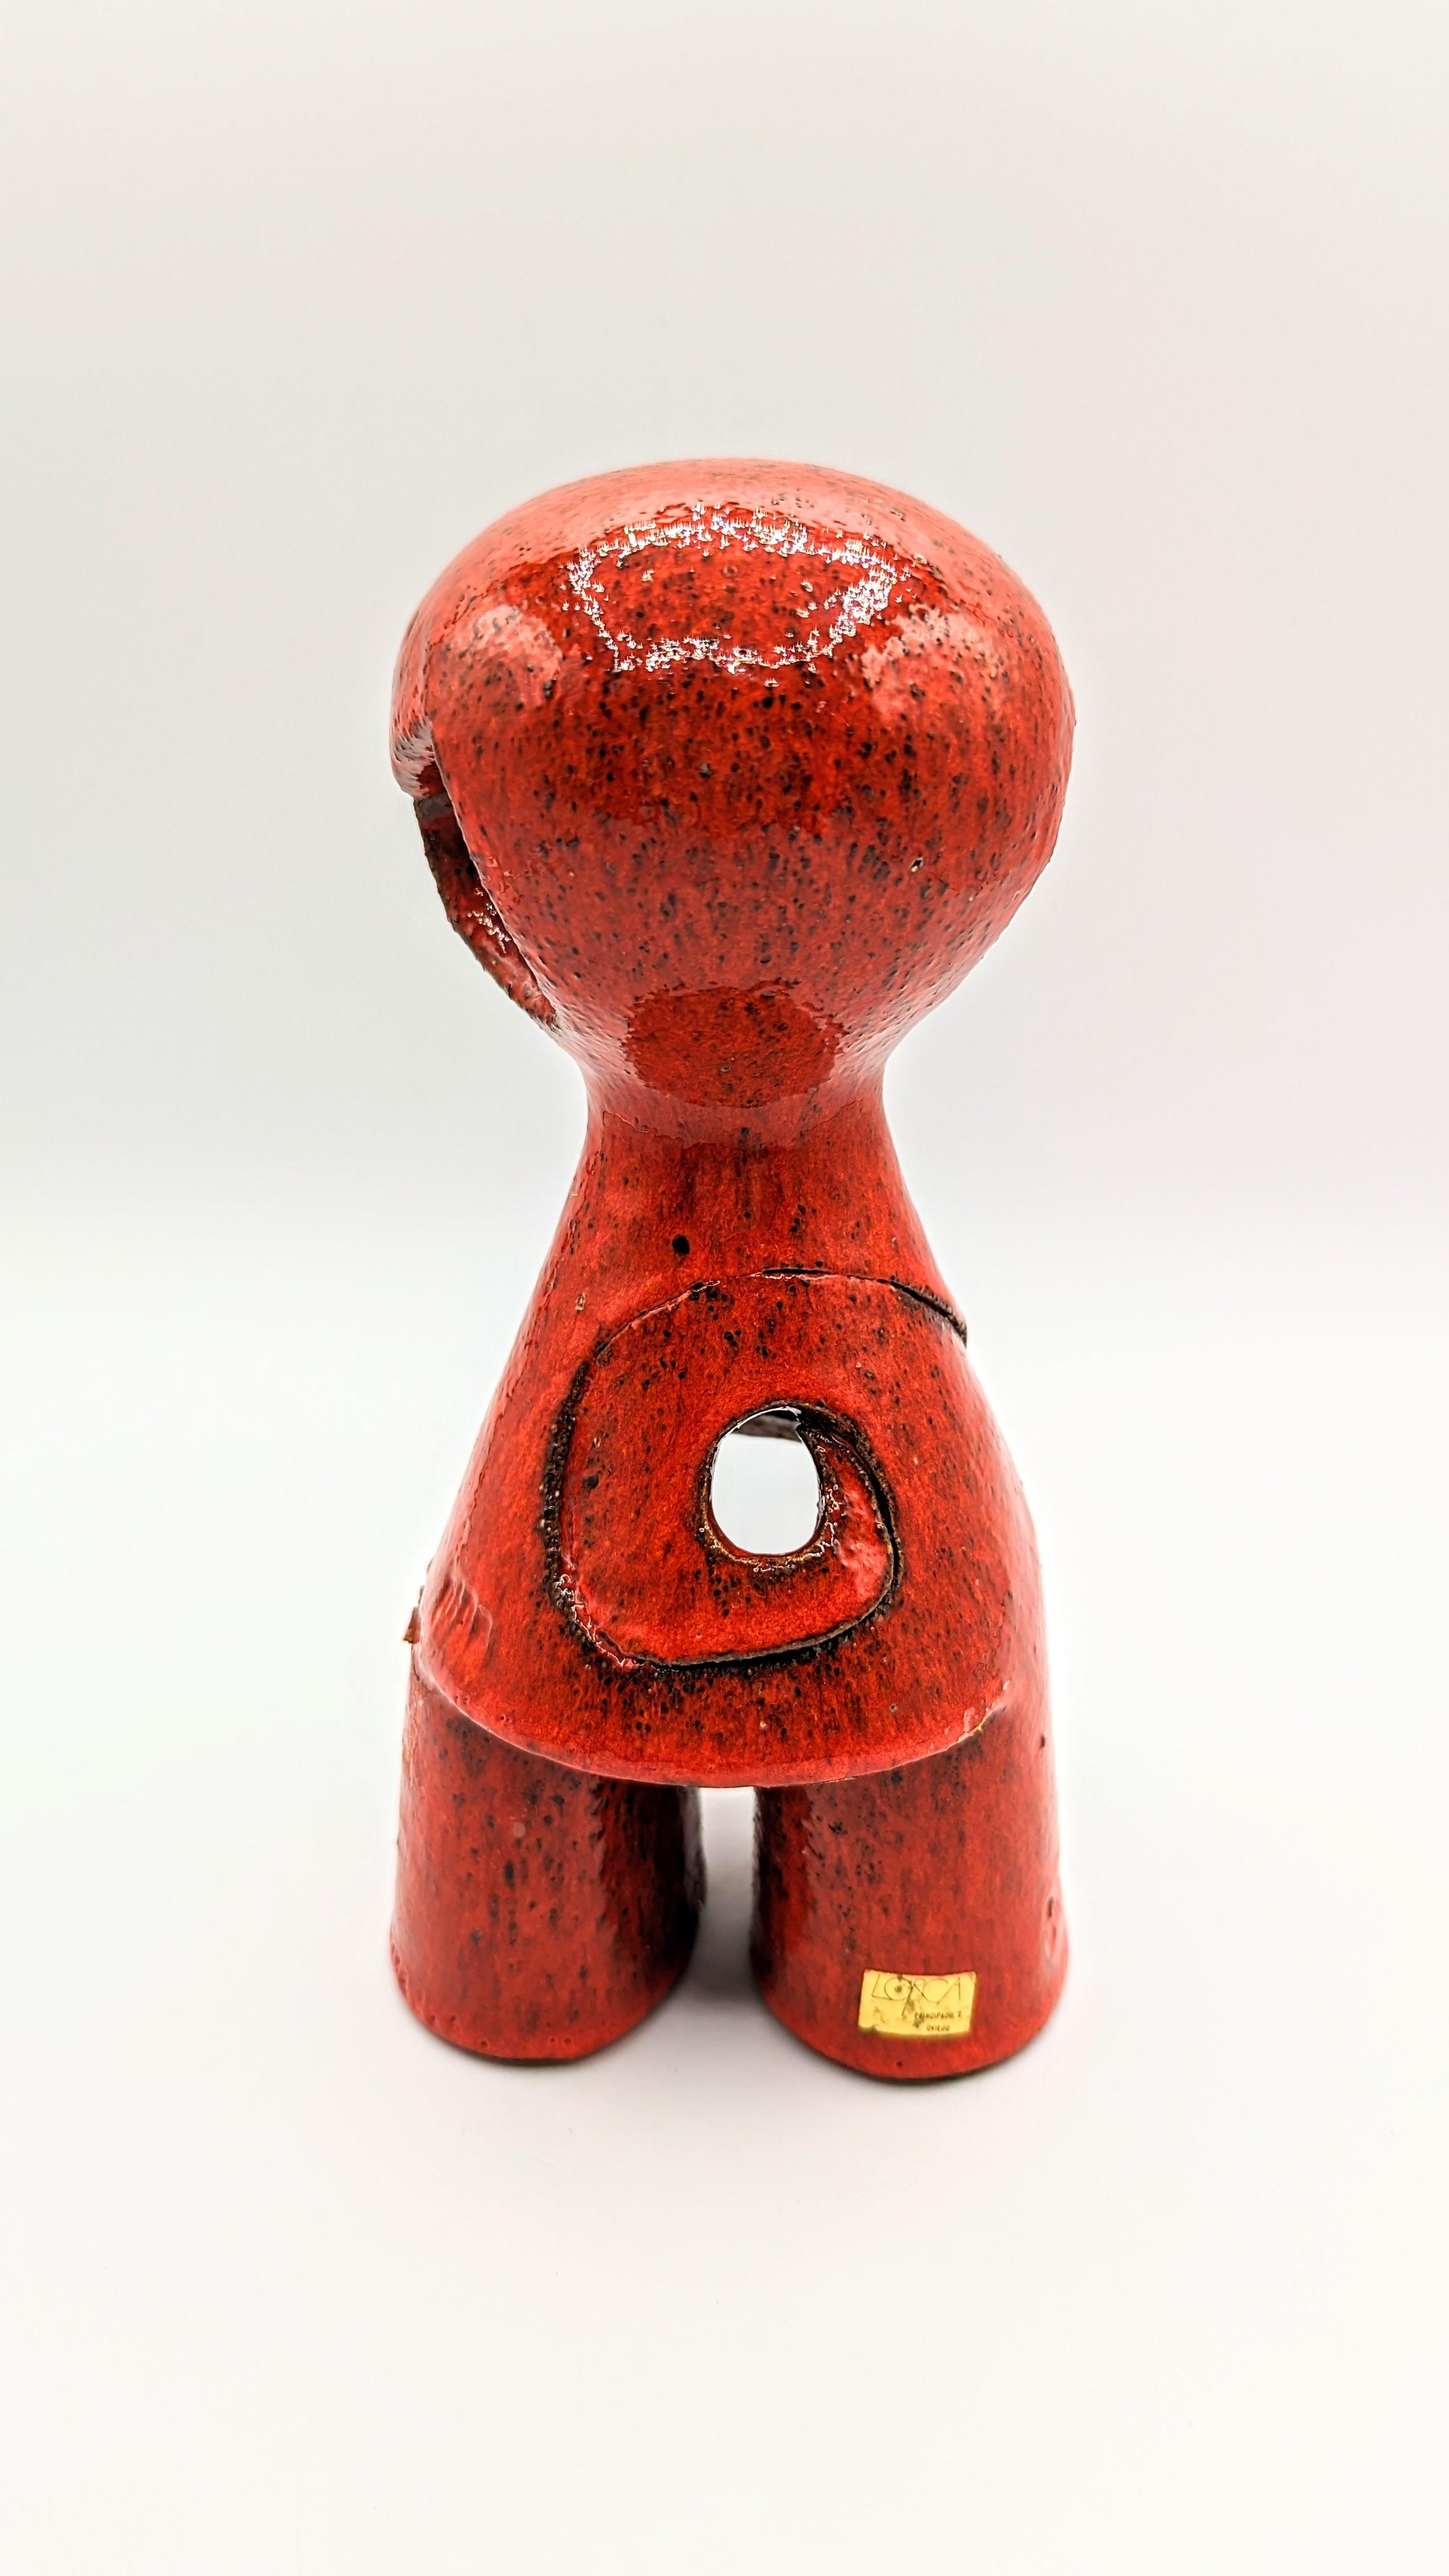 Seltene und schöne Keramikfigur von Pedro Borja, hergestellt in den 1960er Jahren in Spanien. Limitierte Serie 6/100. Unterschrieben.
Sehr dekoratives Objekt in einer unglaublichen Farbe.